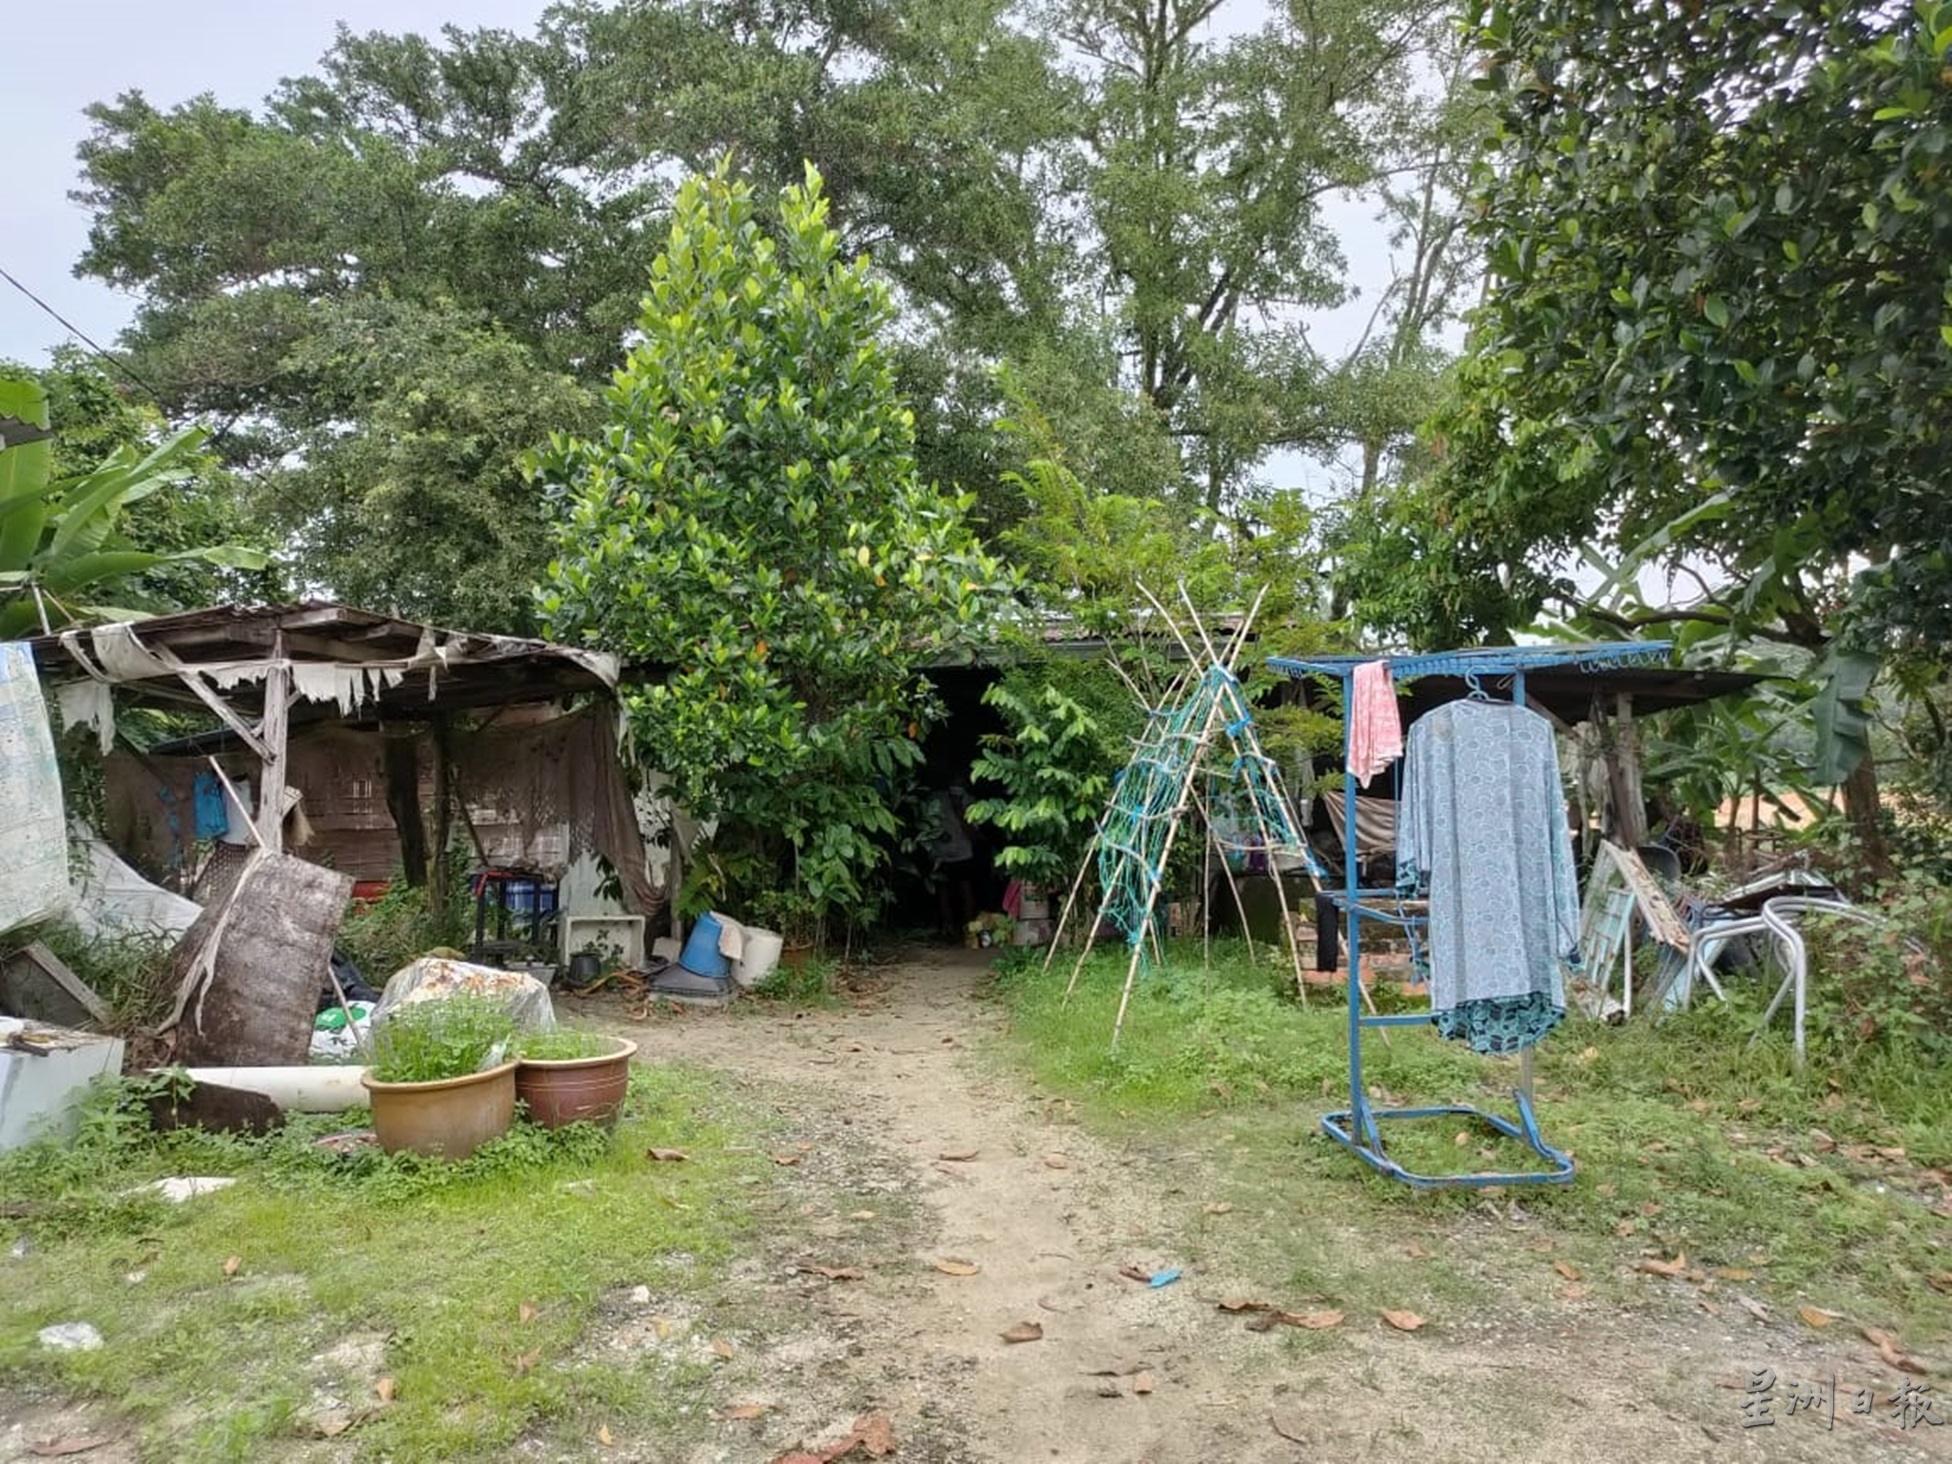 陈亚明与太太居住在破旧的木屋，生活贫困。

